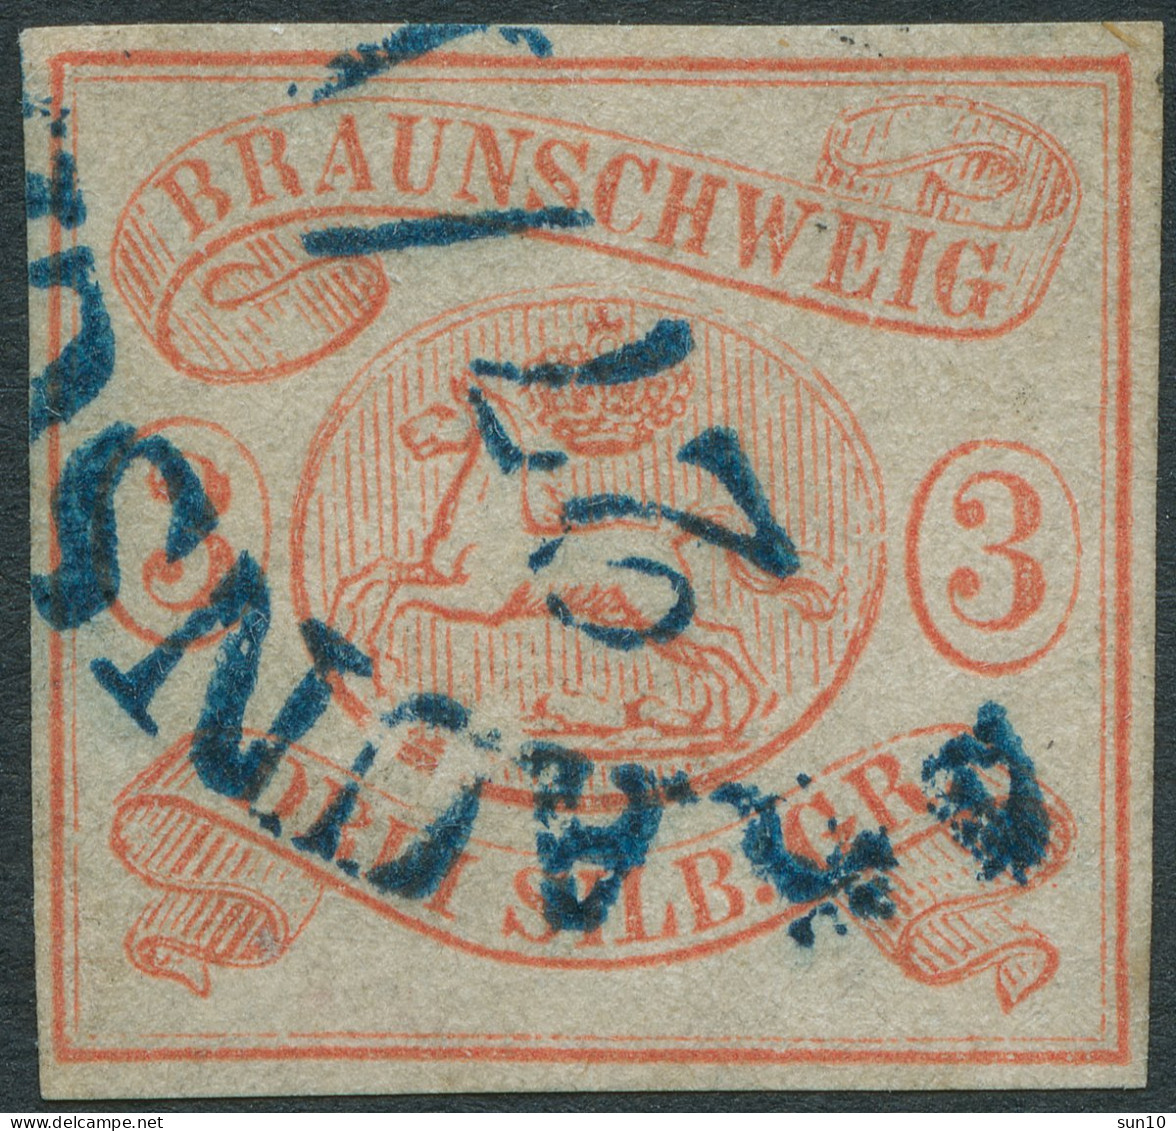 BRAUNSCHWEIG Um 1852, Nr. 3, 6 Sgr. GESTEMPELT BRAUNSCHWEIG, SIGN. Mi. 350,- - Brunswick